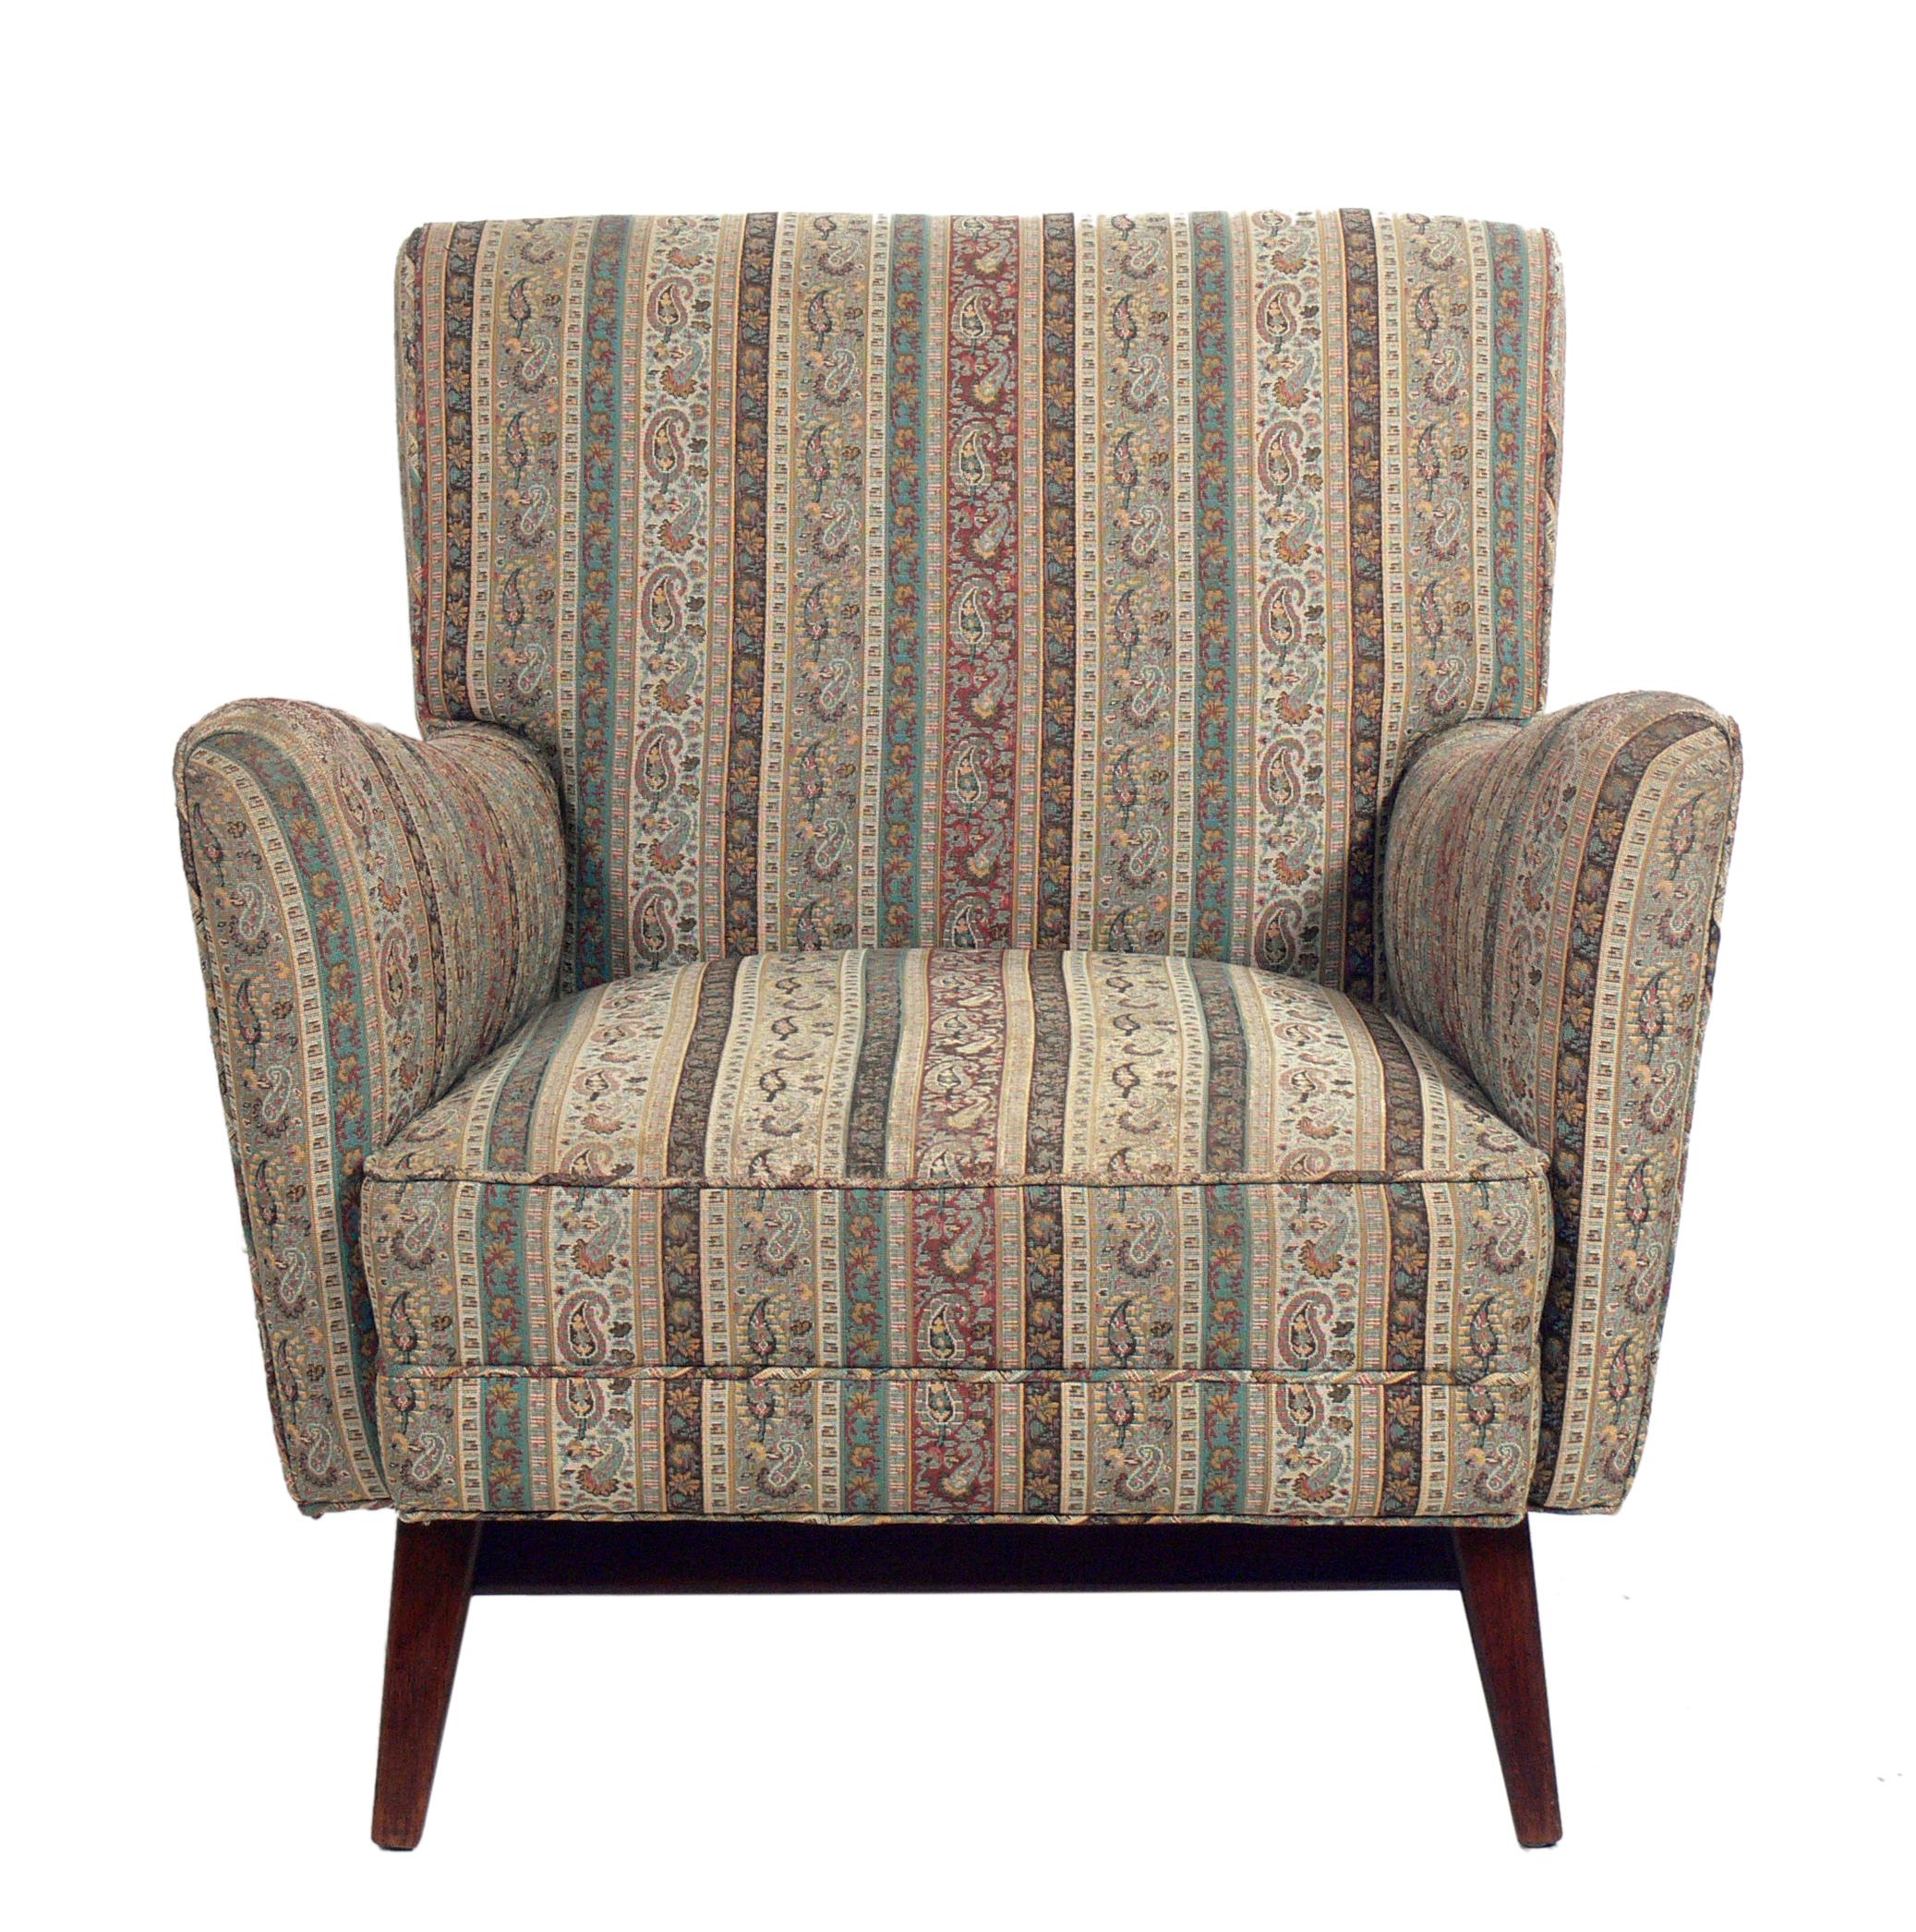 Geschwungener, moderner Loungesessel, Jens Risom, Amerikaner, ca. 1960er Jahre. Dieser Stuhl wird gerade neu gepolstert und kann mit Ihrem Stoff ergänzt werden. Der angegebene Preis beinhaltet die Neupolsterung in Ihrem Stoff. Der Sockel aus